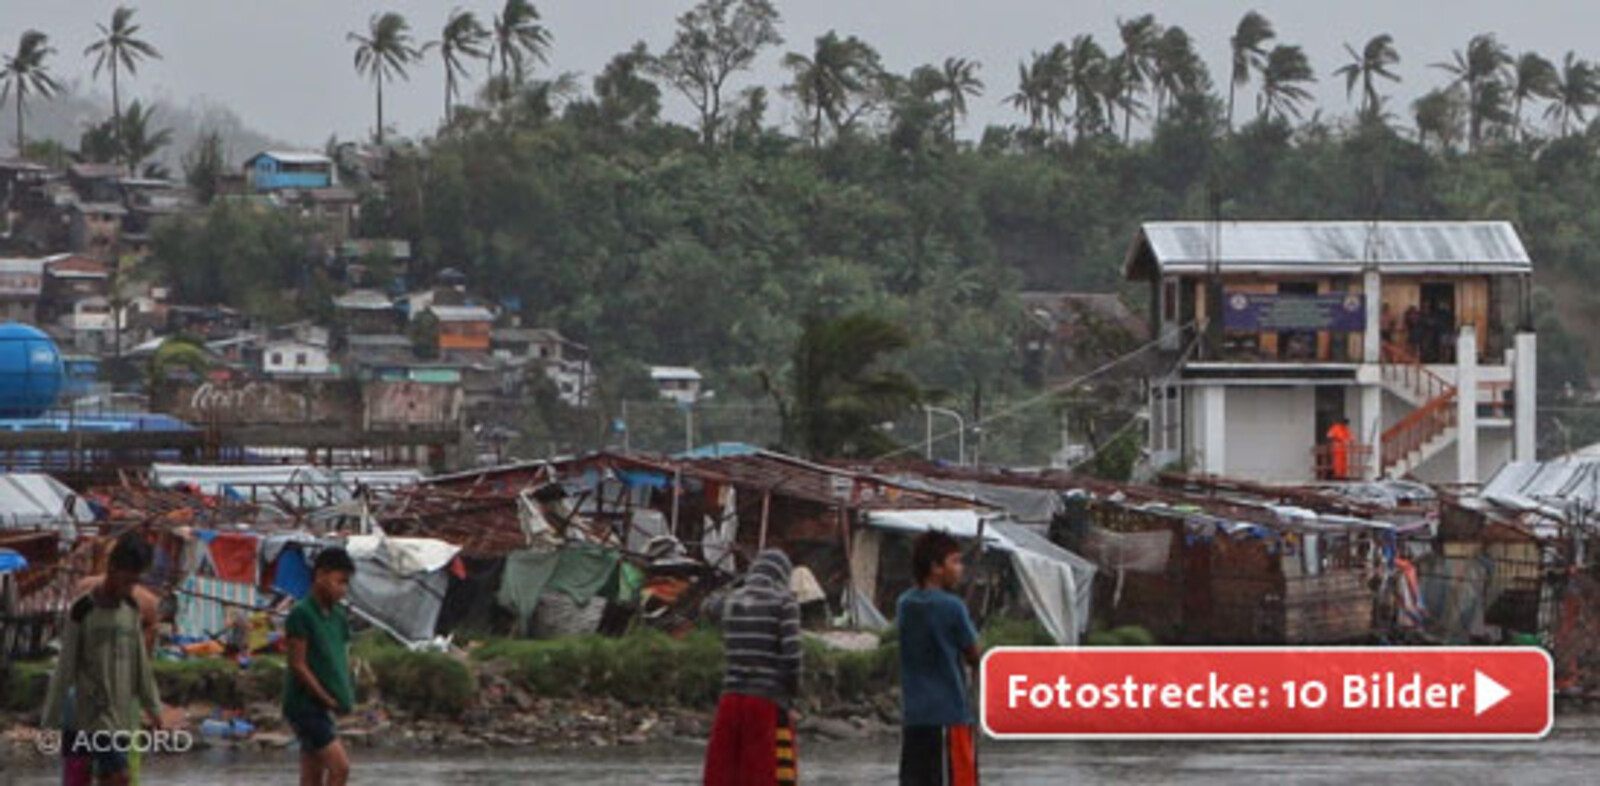 Taifun Hagupit war zum Glück deutlich schwächer als Taifun Haiyan vor einem Jahr. Trotzdem hat auch er vielerorts erheblichen Schaden angerichtet, wie diese Aufnahme aus der philippinischen Großstadt Tacloban zeigt.